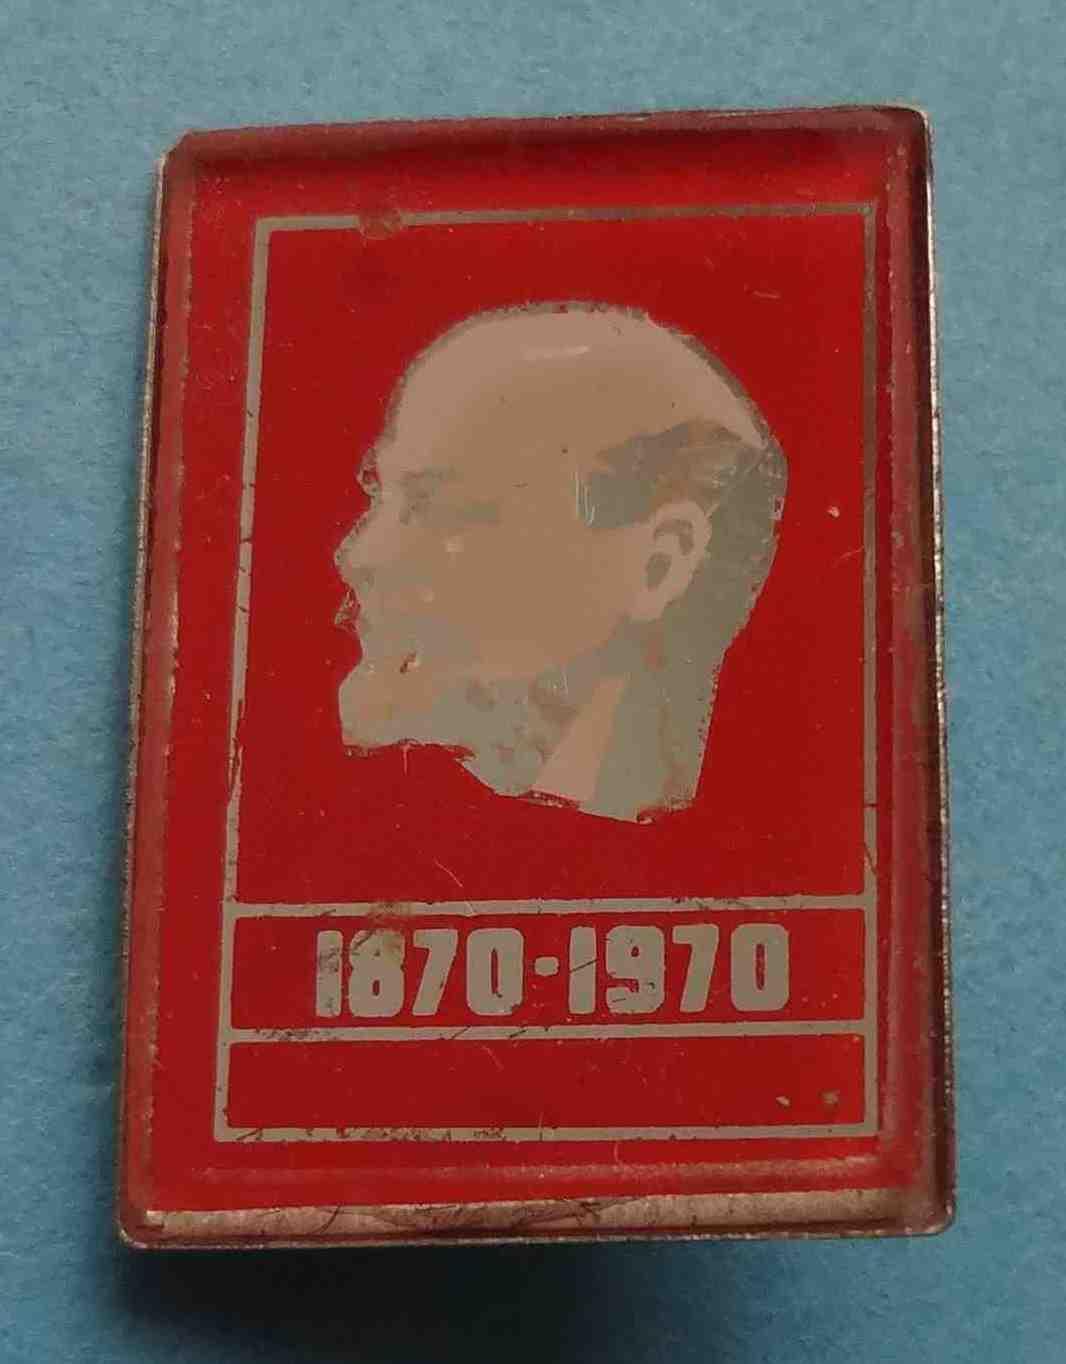 100 лет Ленин 1870-1970 красный стекло (31) 1